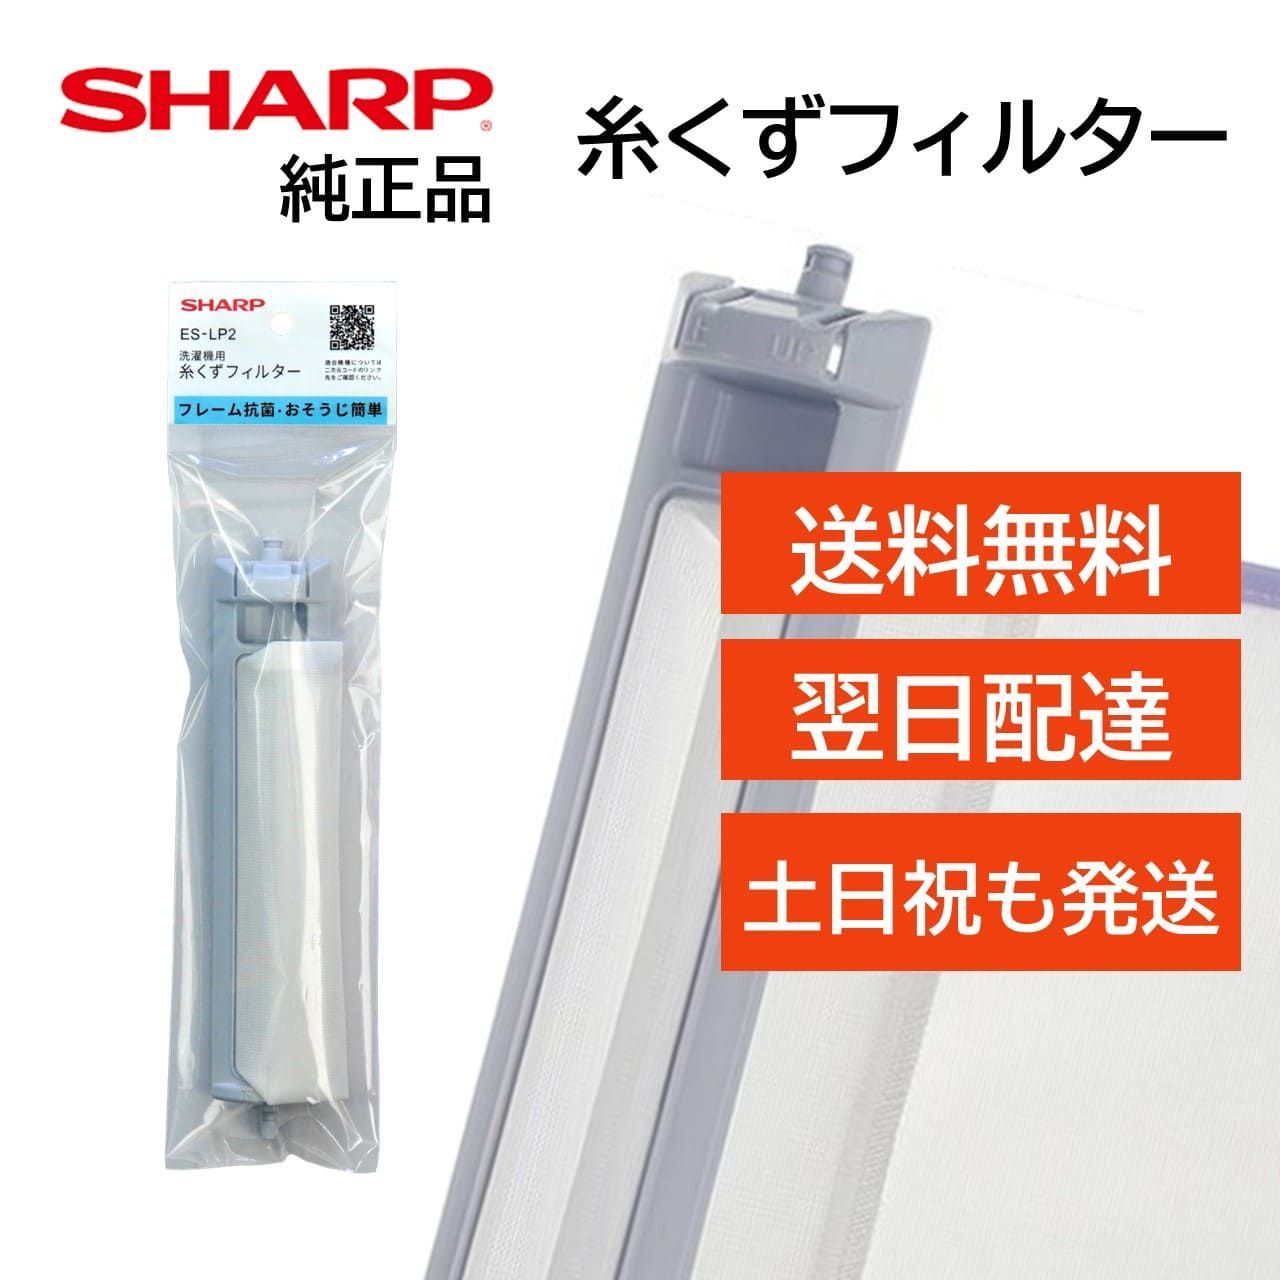 Sharp ES-LP2 糸くずフィルター 送料無料お手入れ要らず - 洗濯機